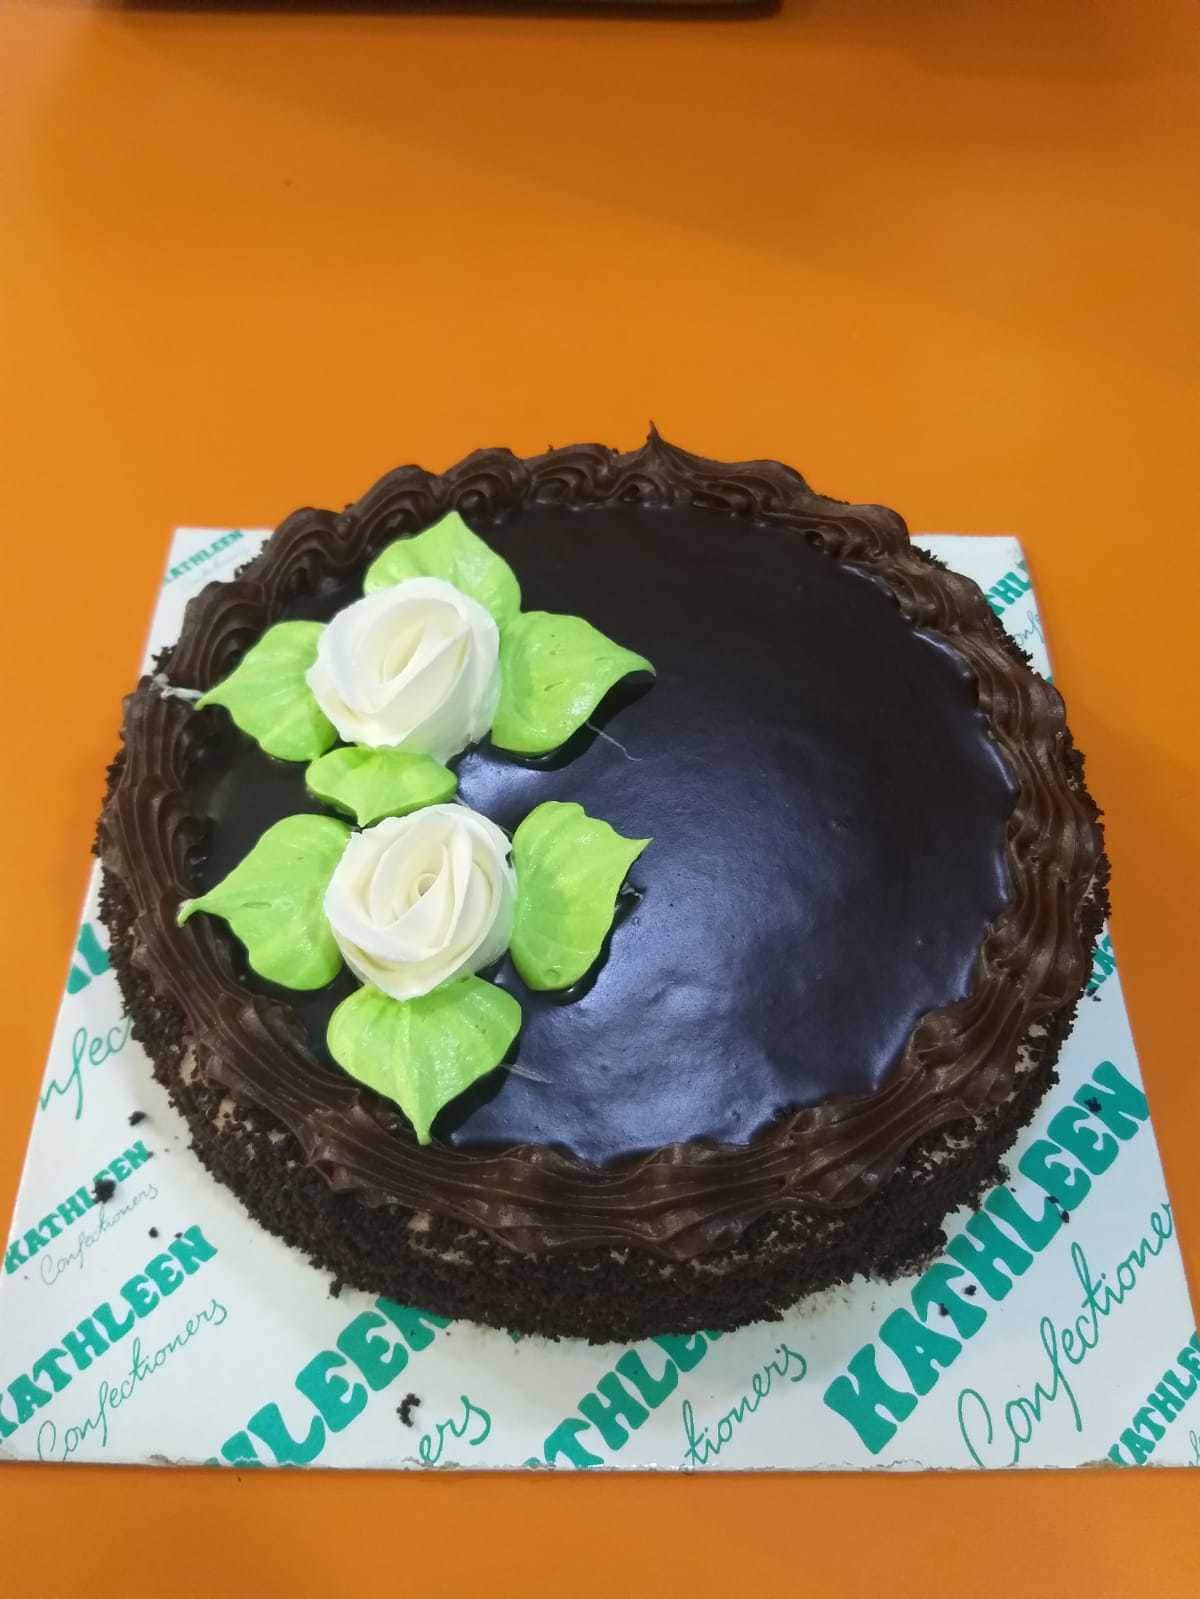 Top more than 102 kathleen cake online order best - kidsdream.edu.vn